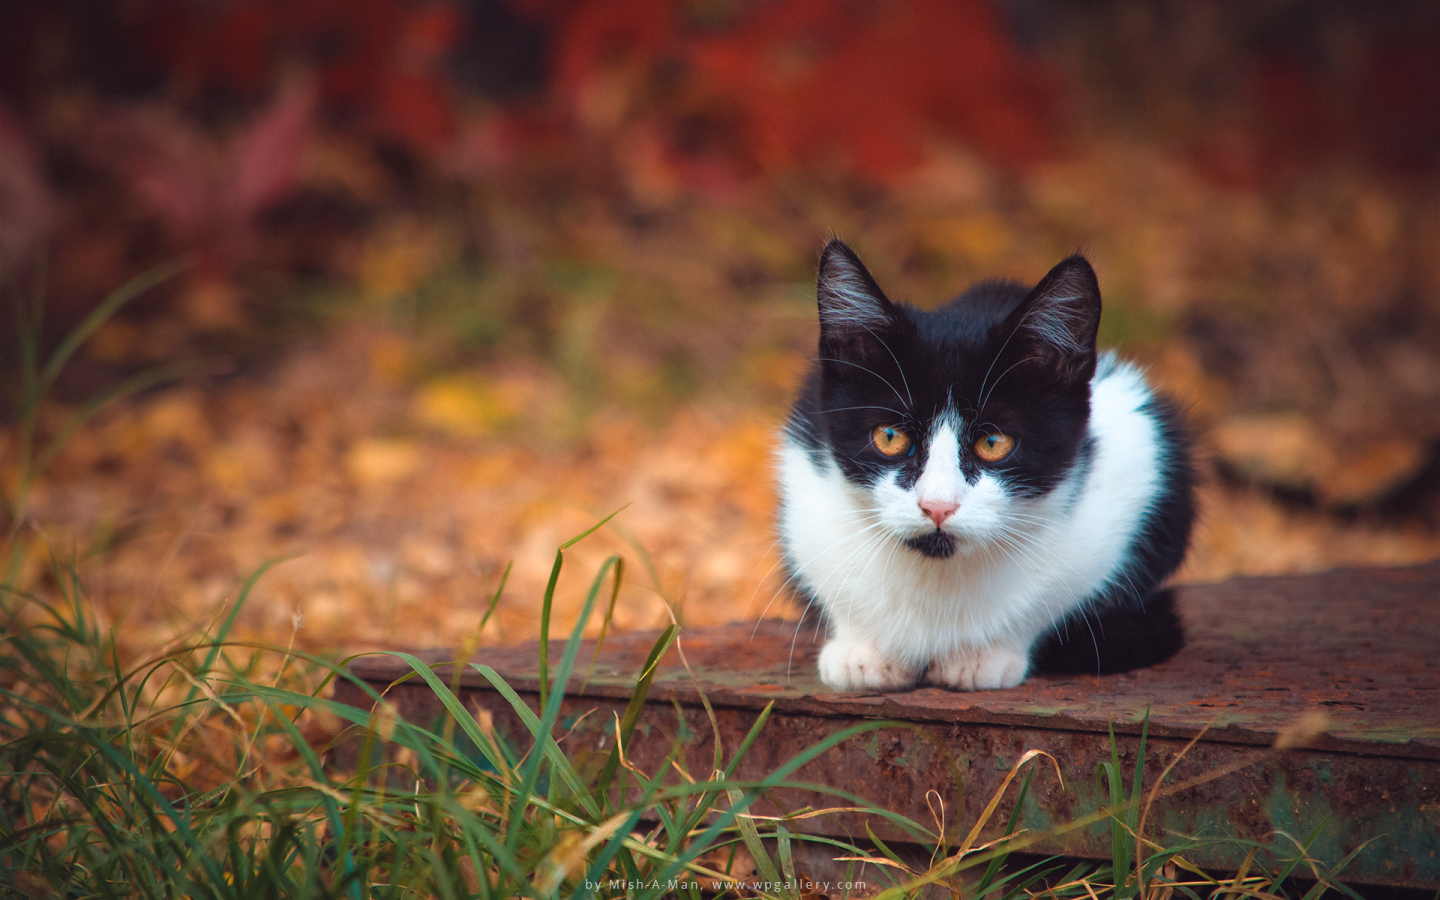 Autumn Kitten for 1440 x 900 widescreen resolution